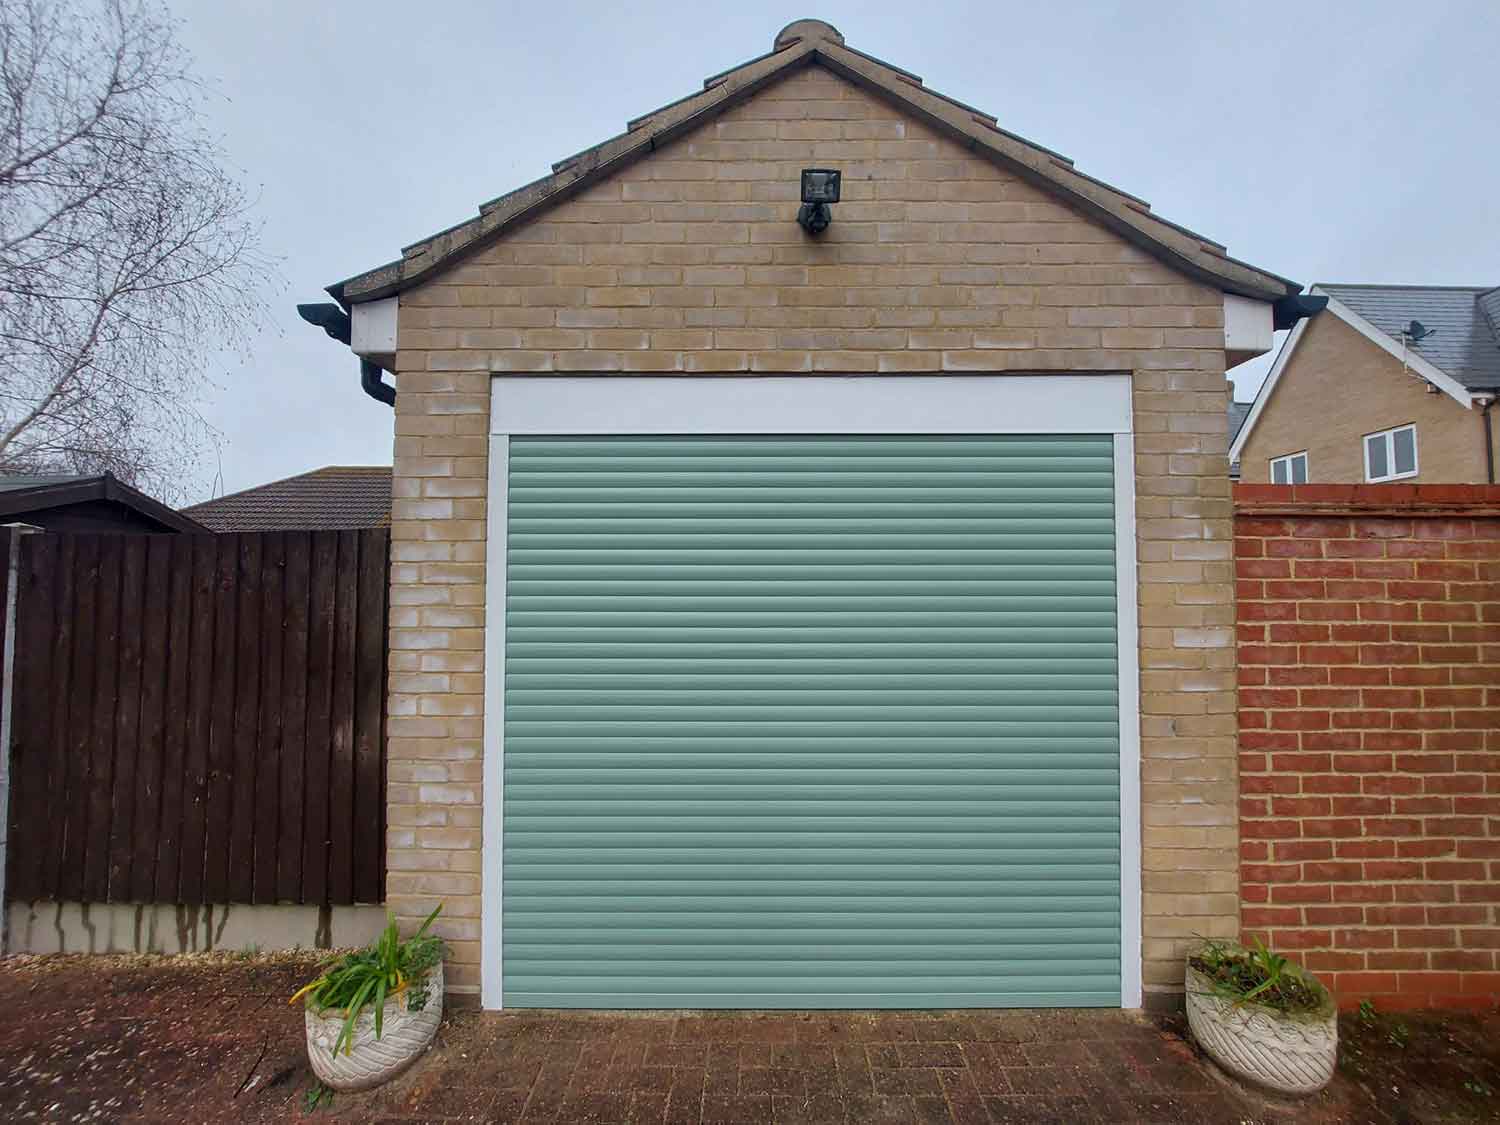 Electric Garage Doors in Bury St Edmunds